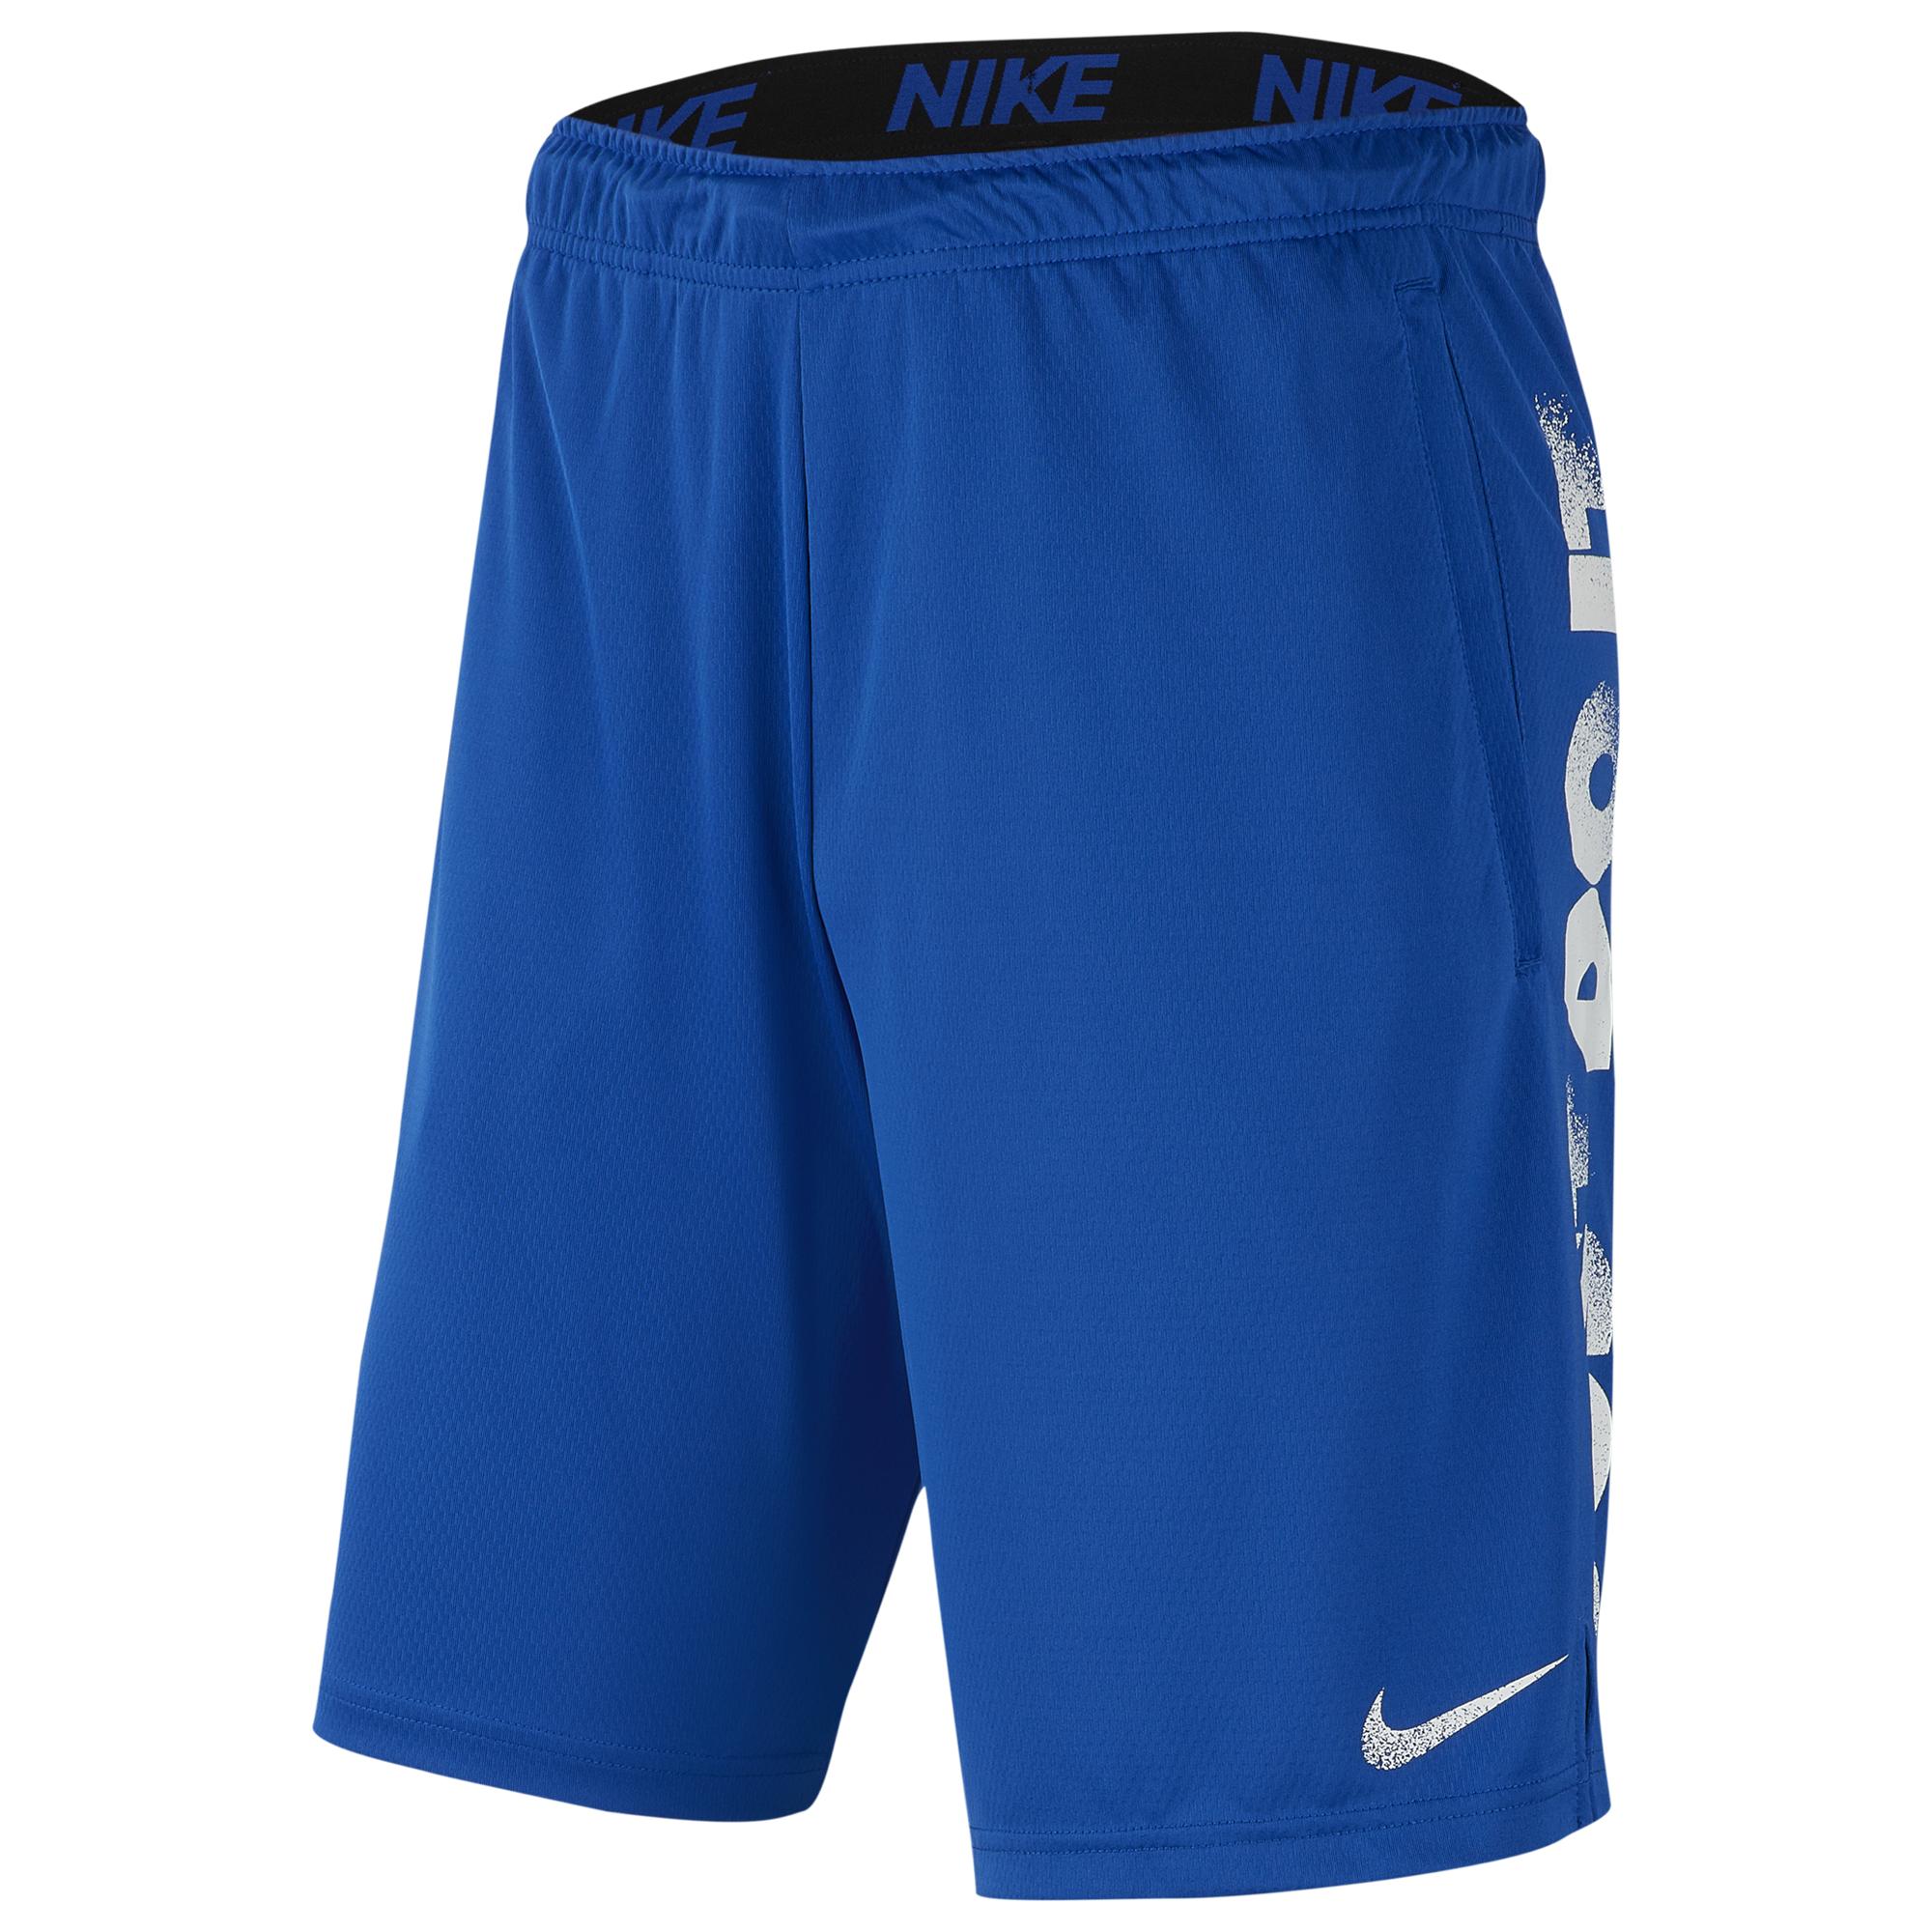 Nike Fly Short 4.0 Jdi Back Gfx in Blue for Men - Lyst